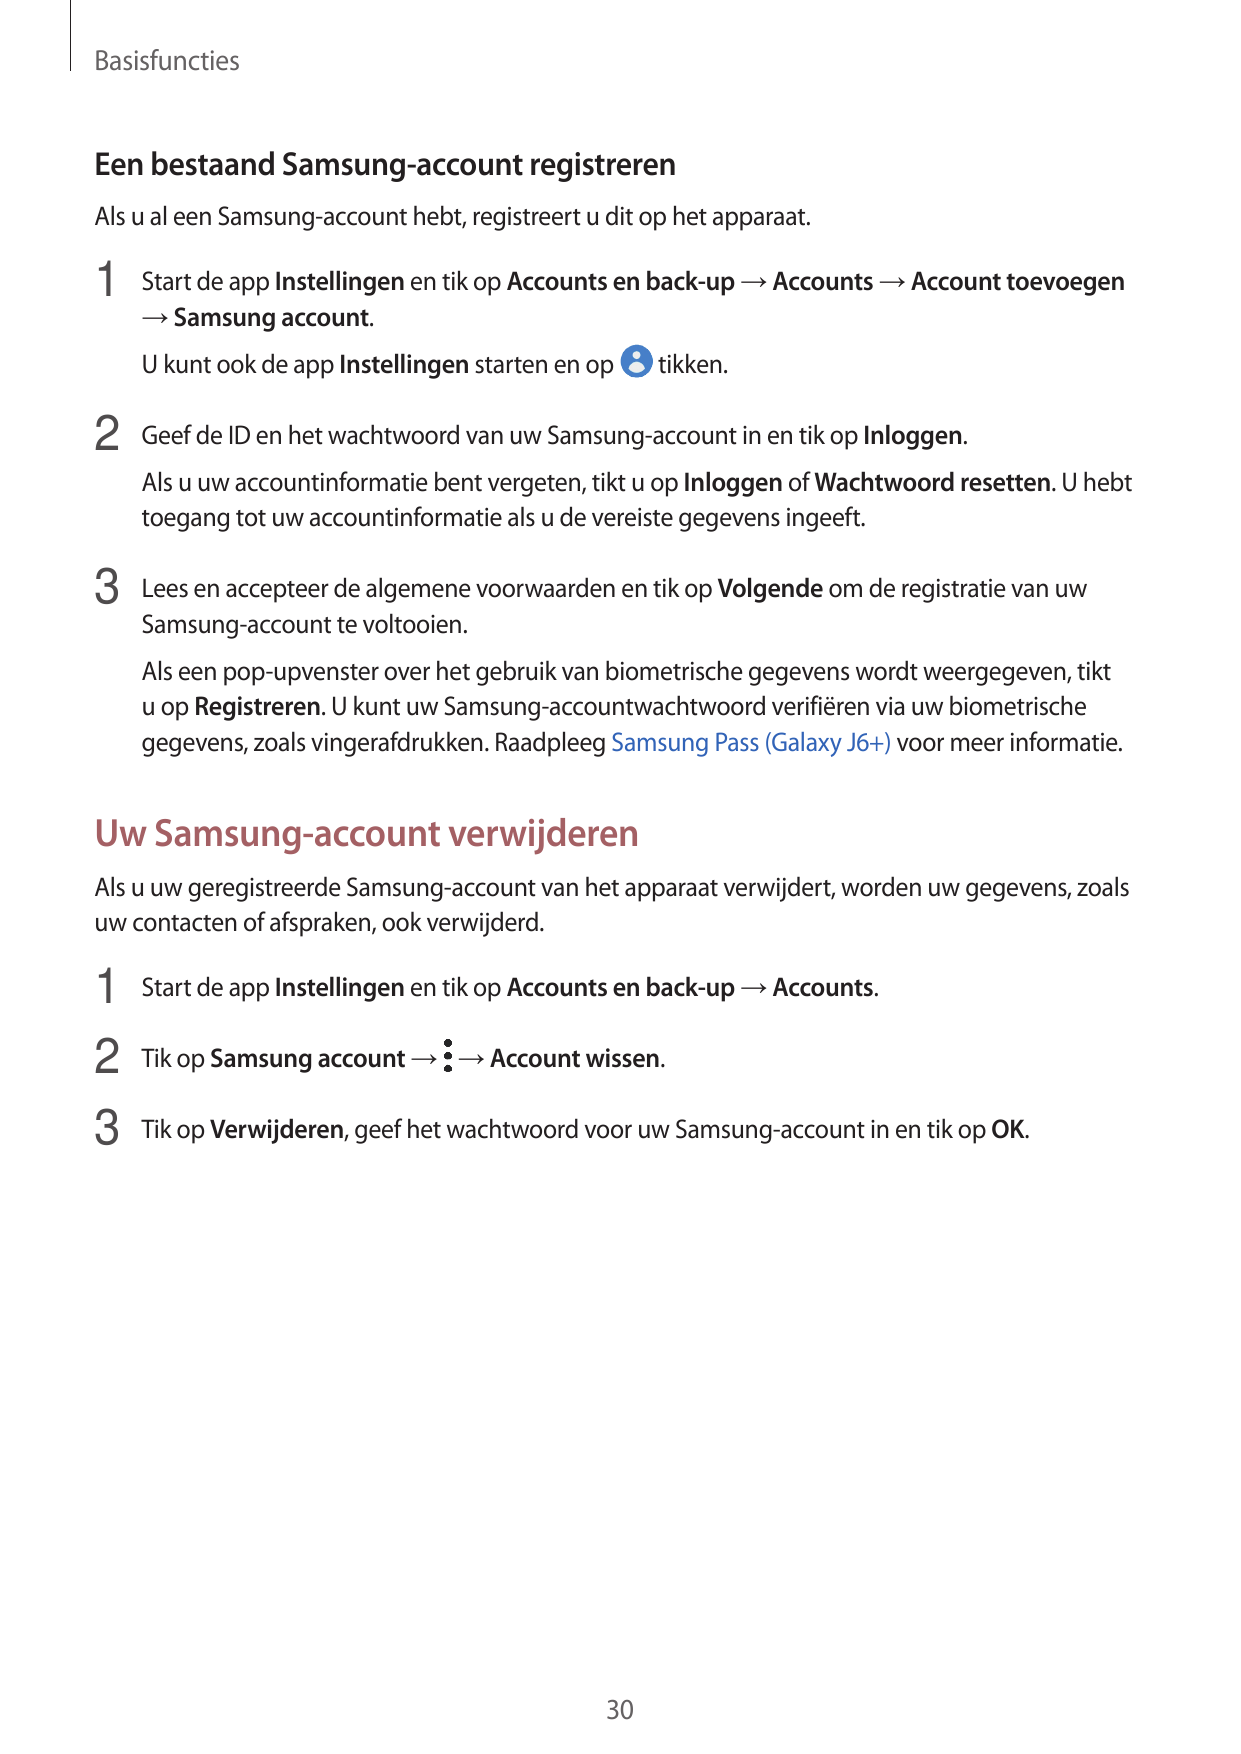 BasisfunctiesEen bestaand Samsung-account registrerenAls u al een Samsung-account hebt, registreert u dit op het apparaat.1 Star